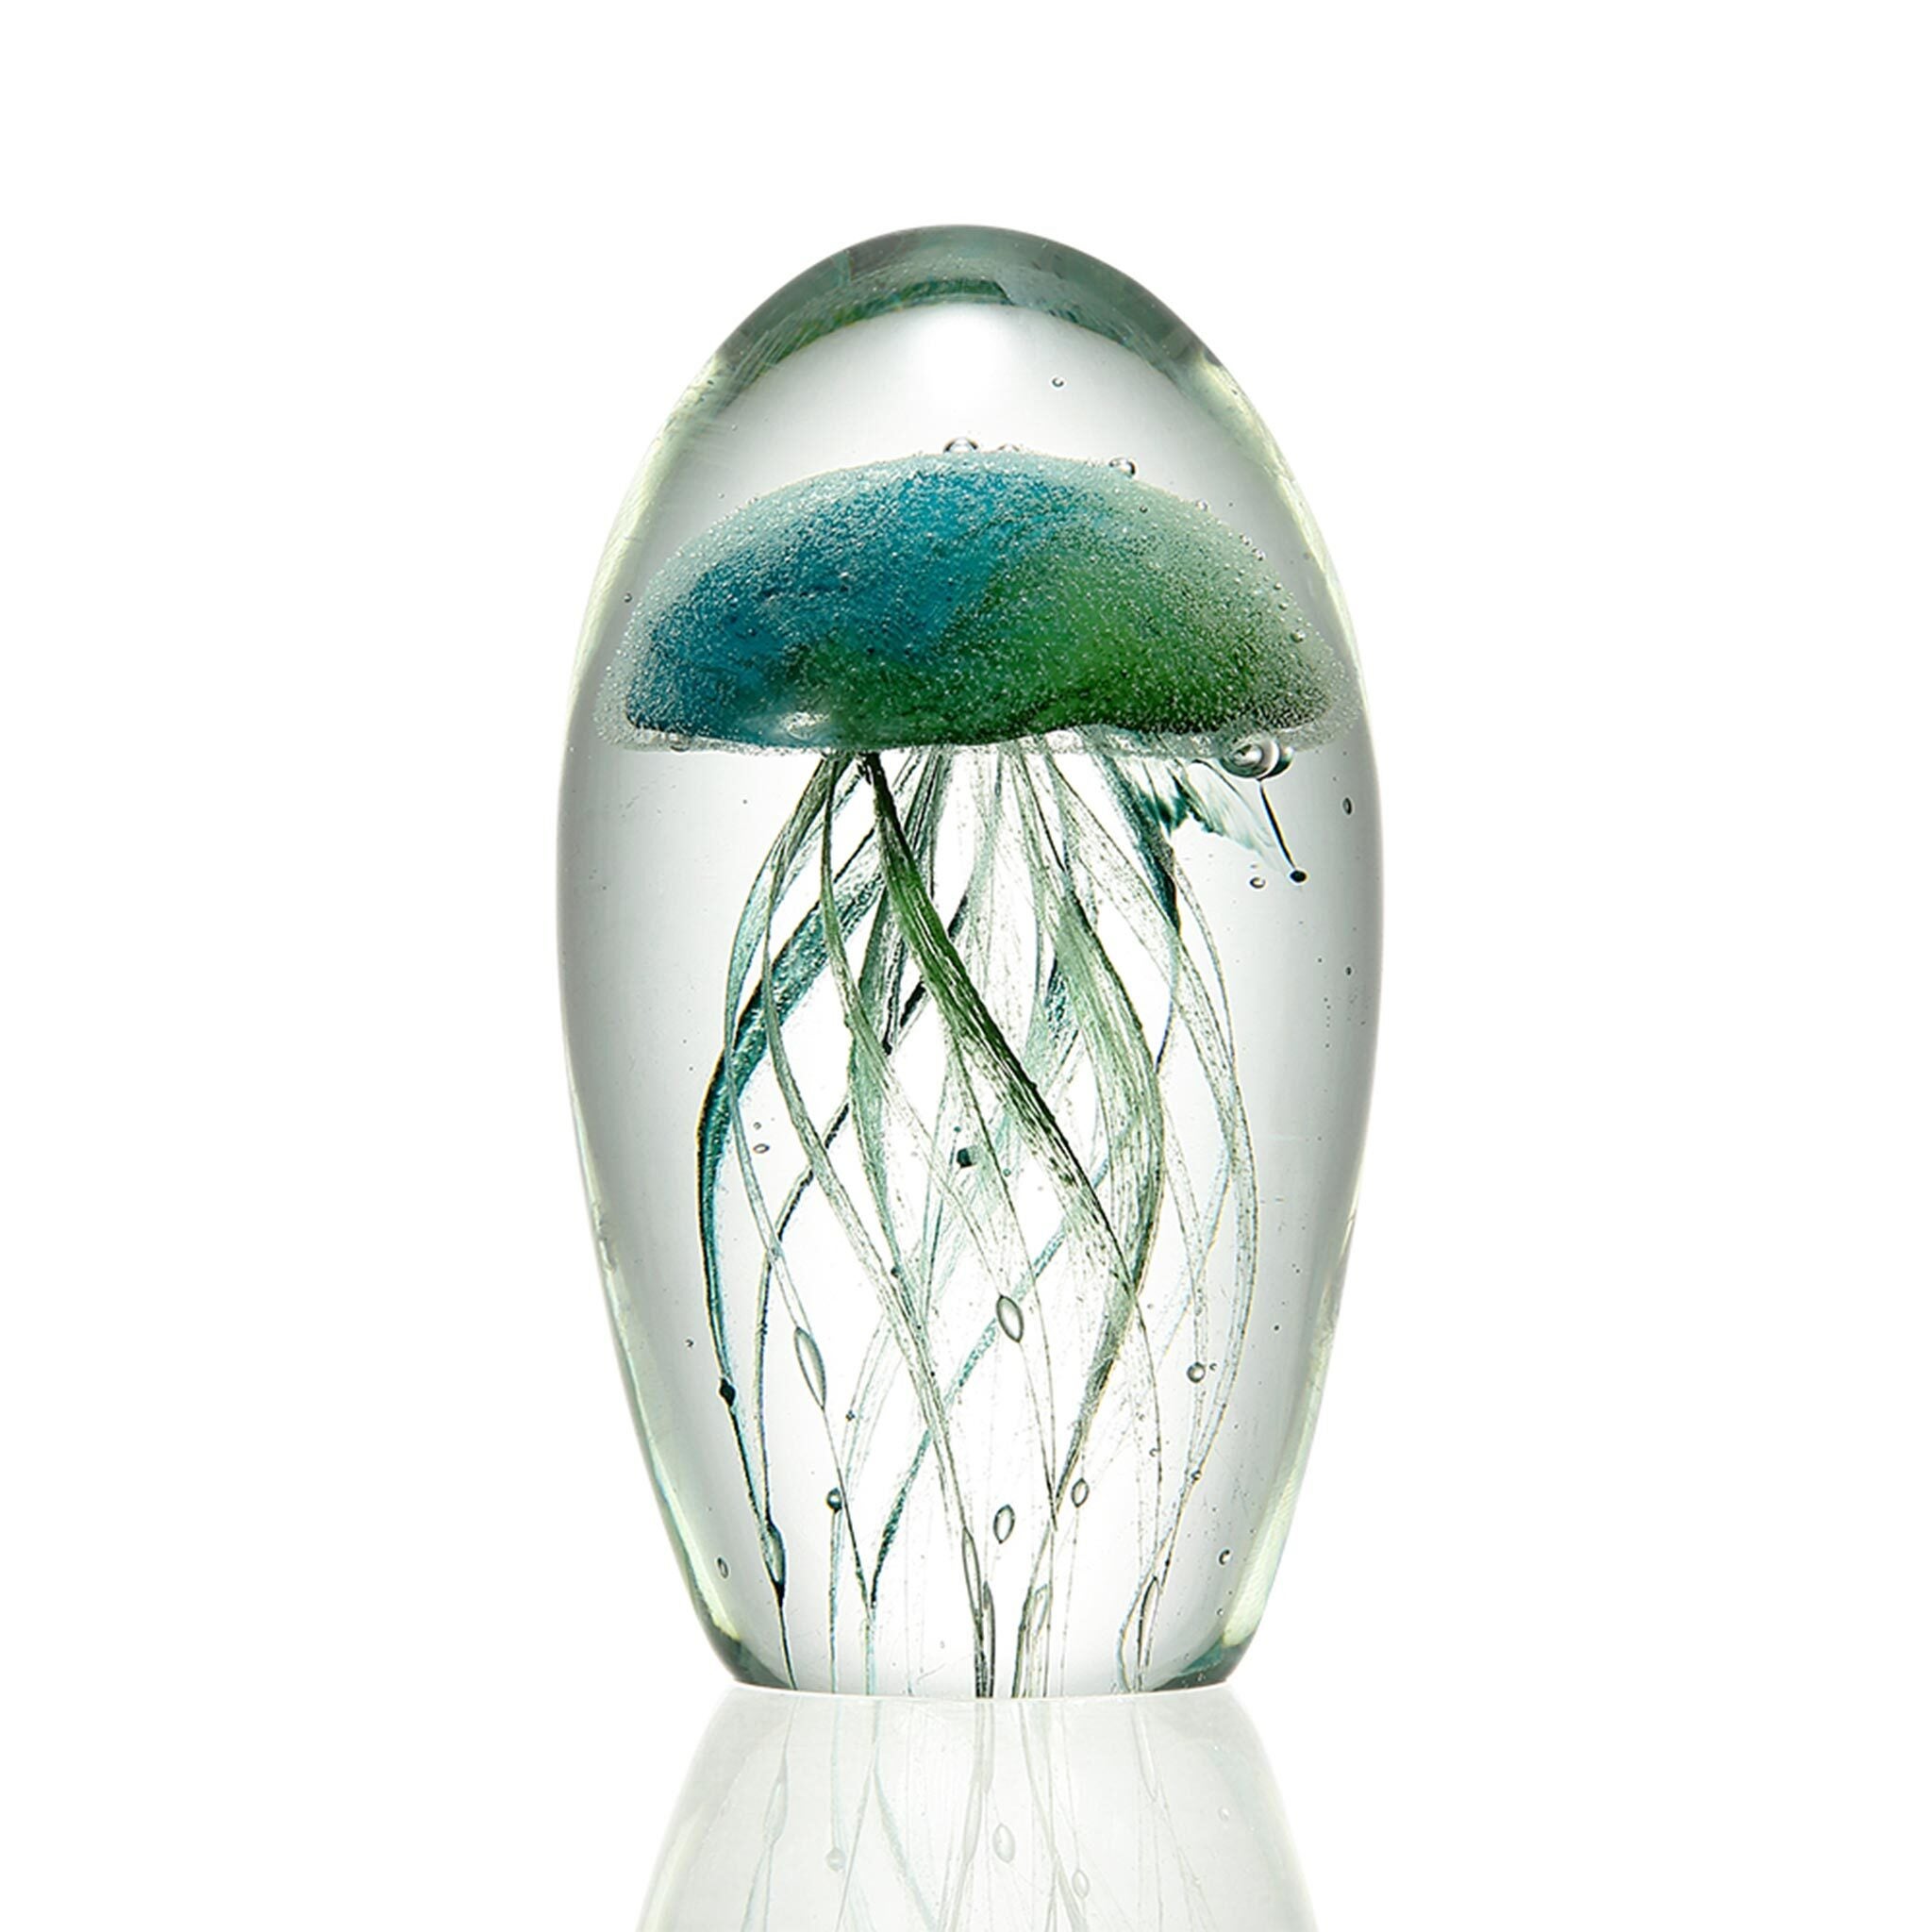 ONLY Coast LL7881 LED-Lenser Blue Spiral Decorative Glass Art Ball for LED 